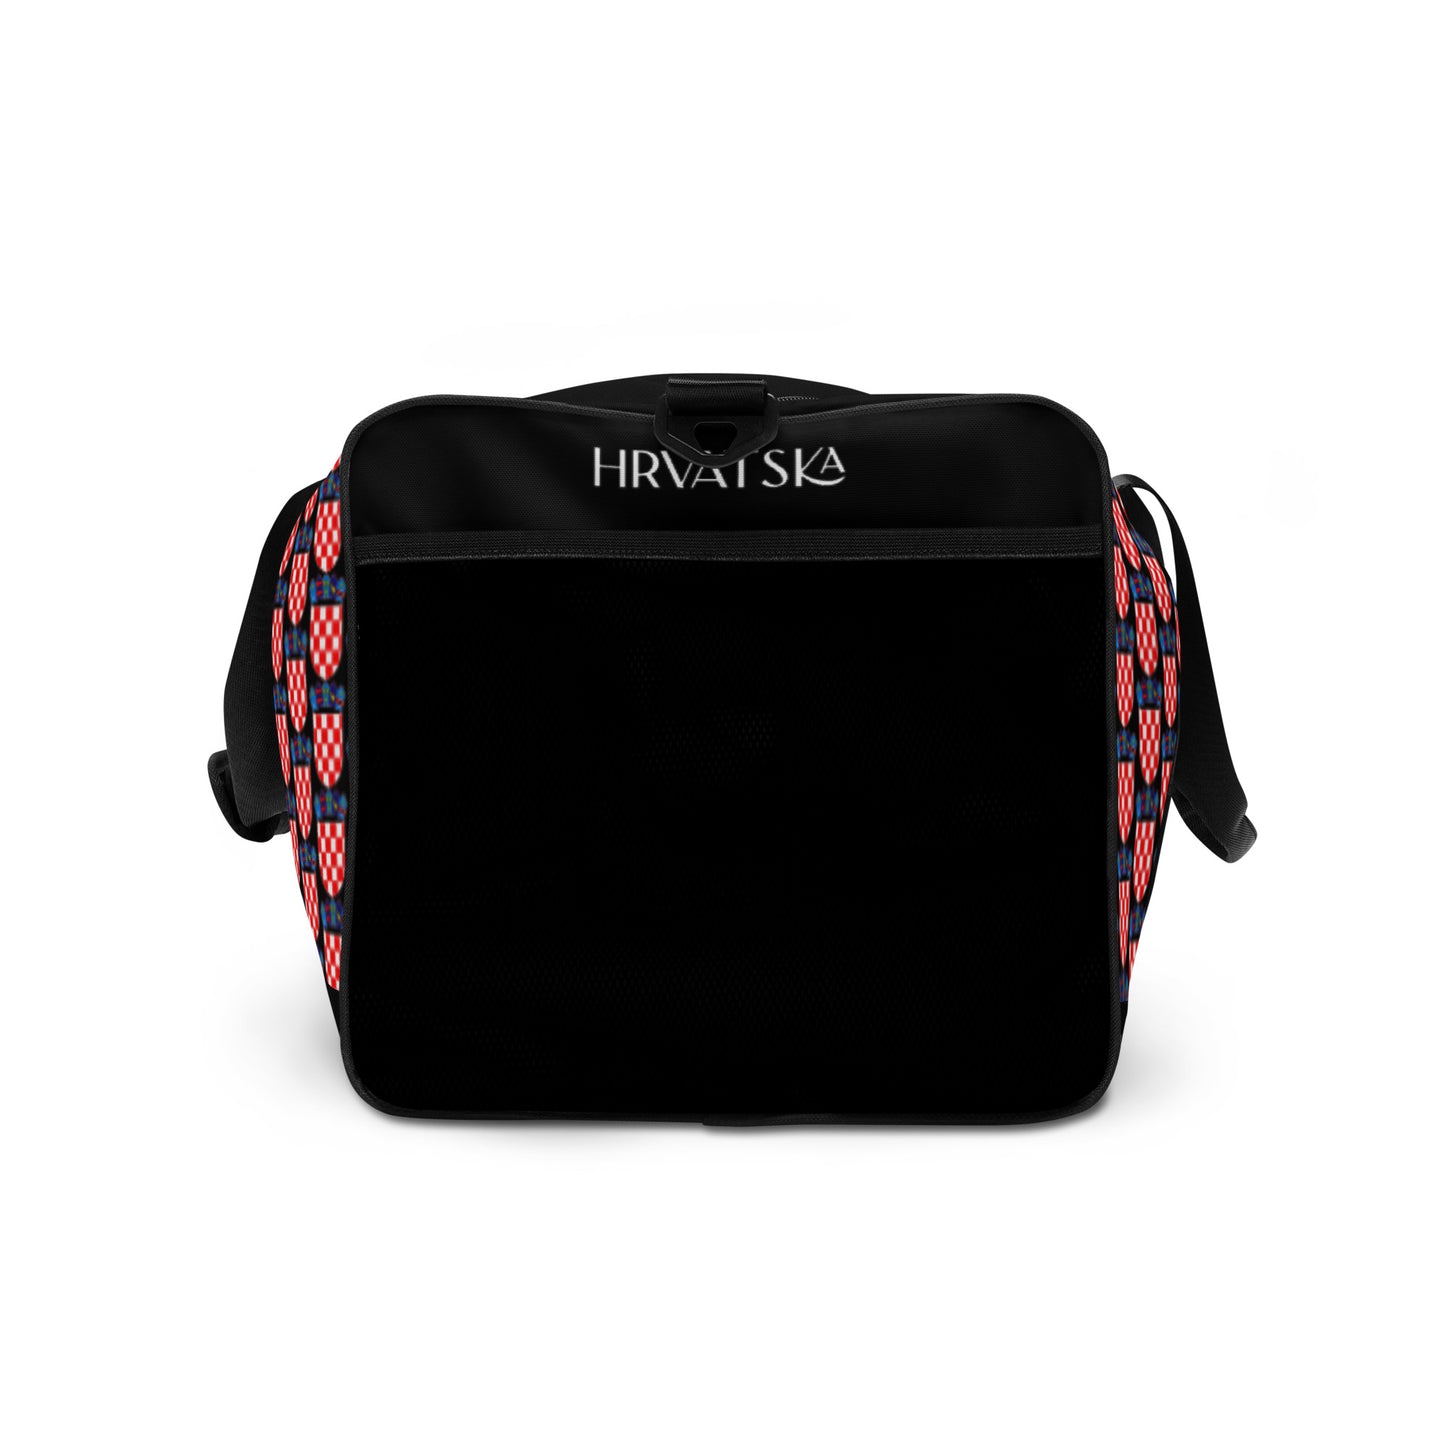 Pro Series : Premium Player number 4 Duffle Bag